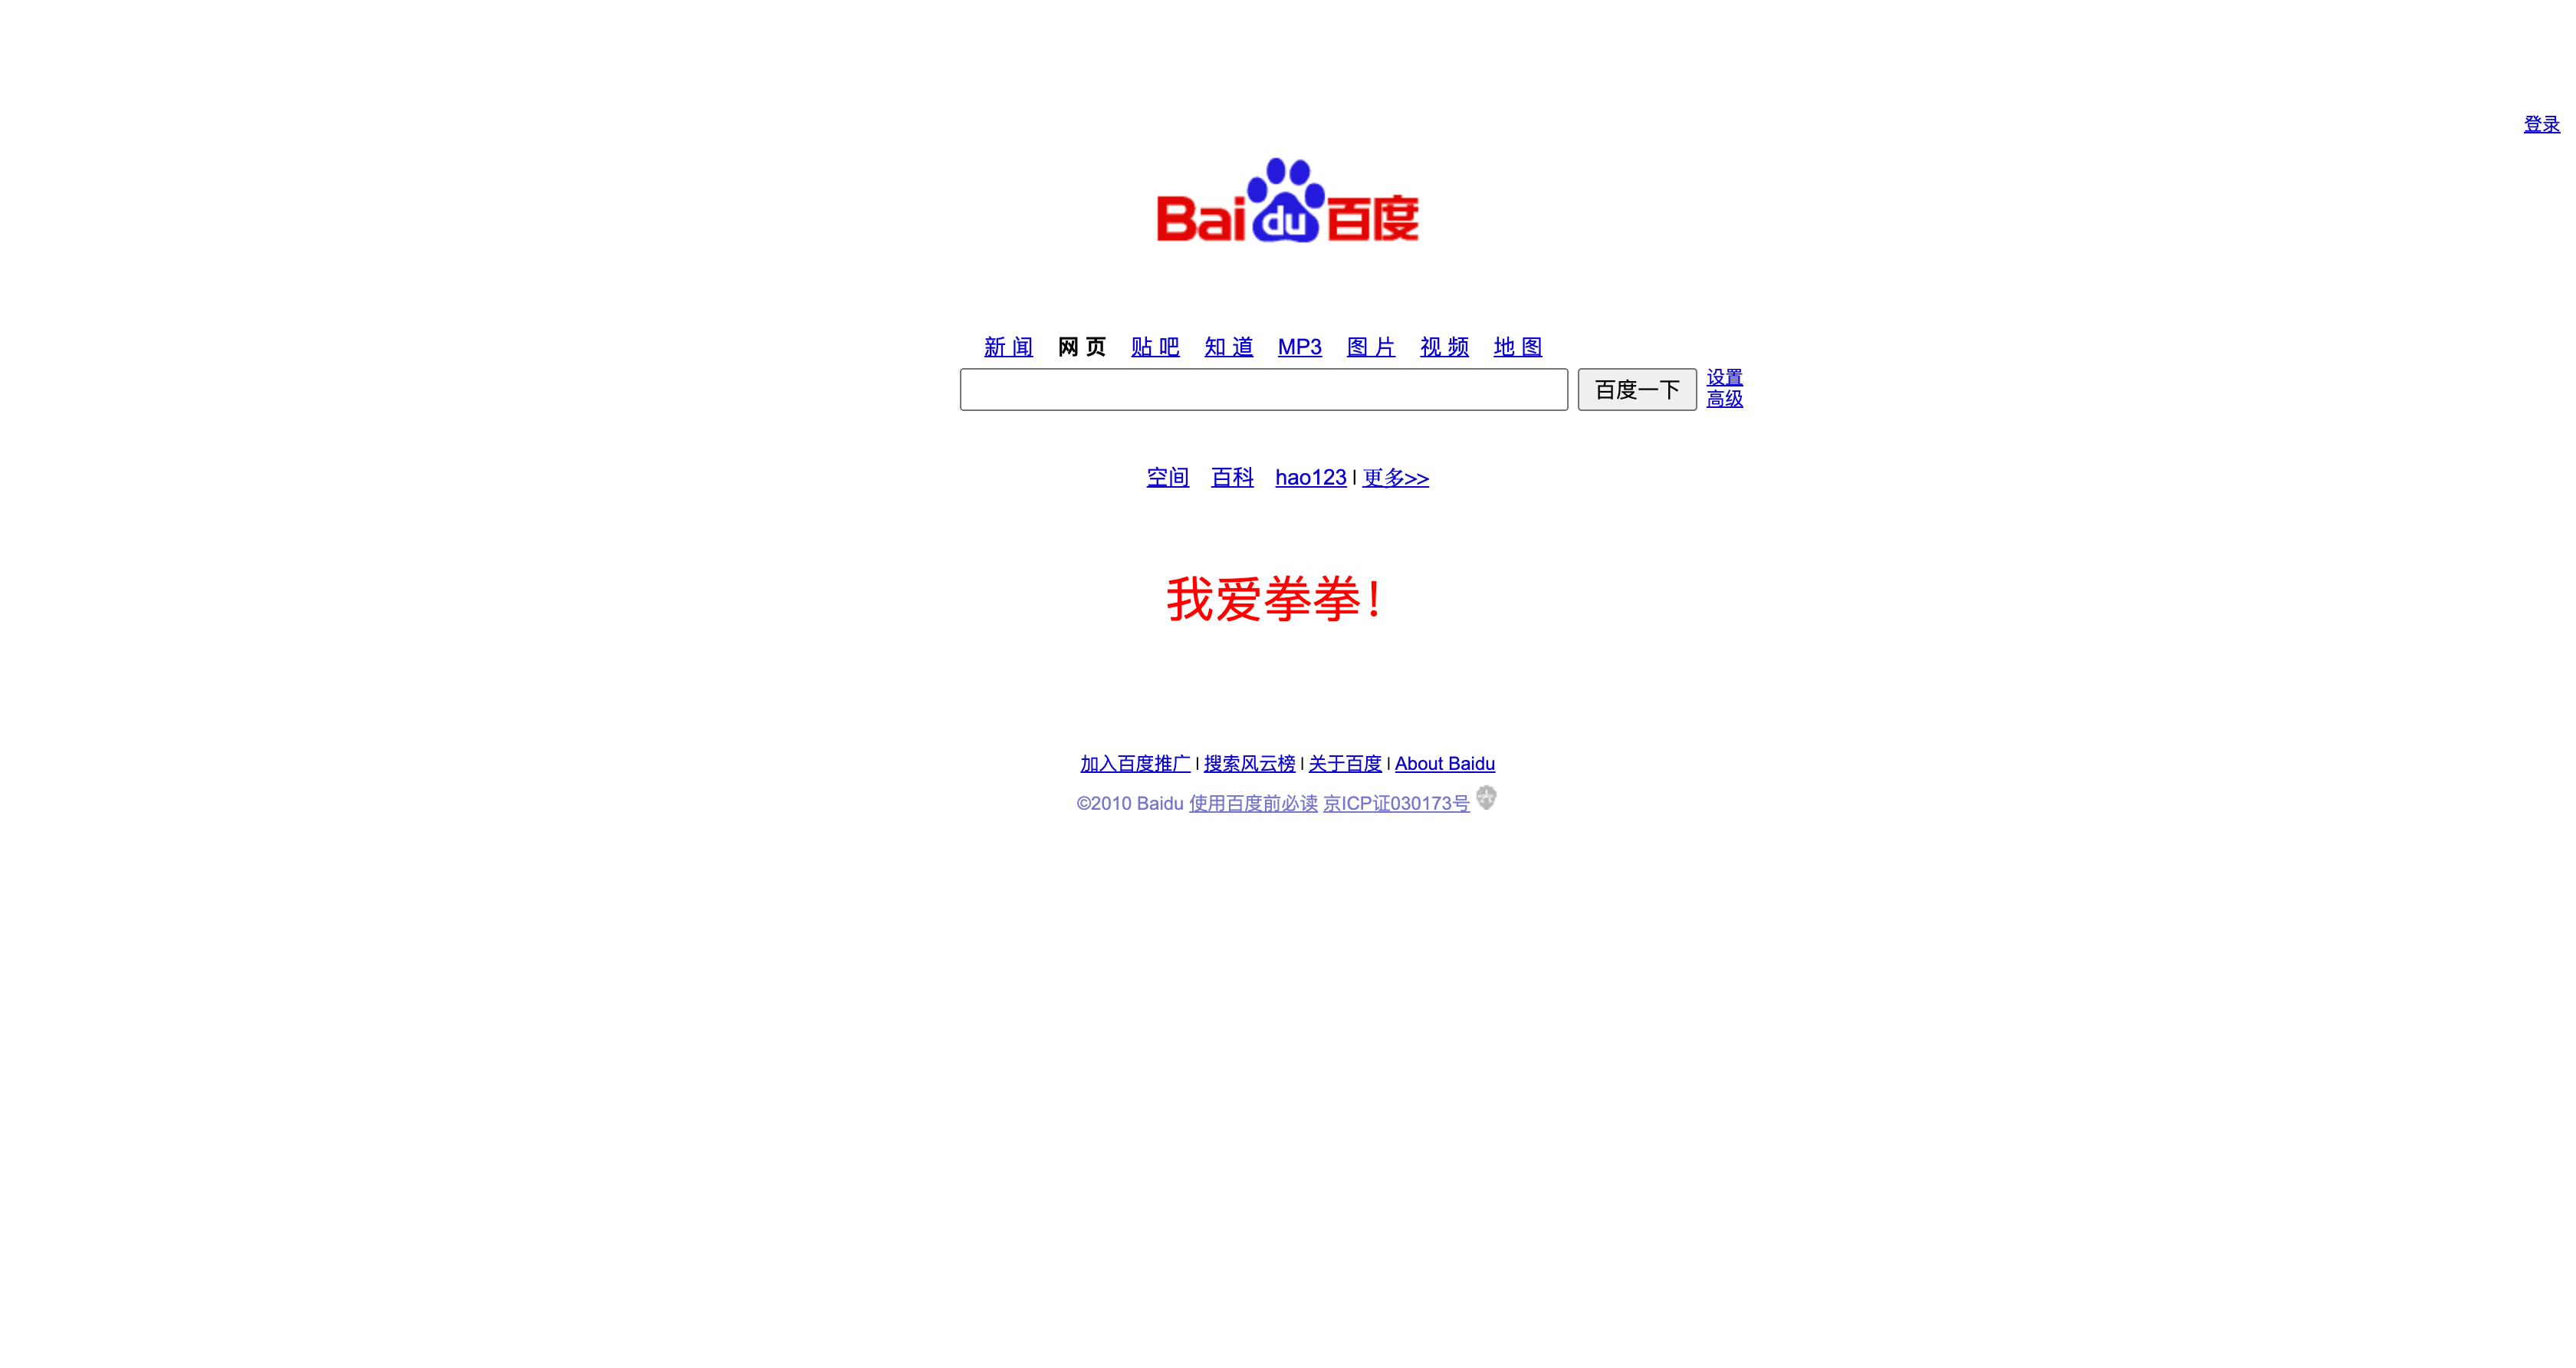 renfei.net在2010年的首页